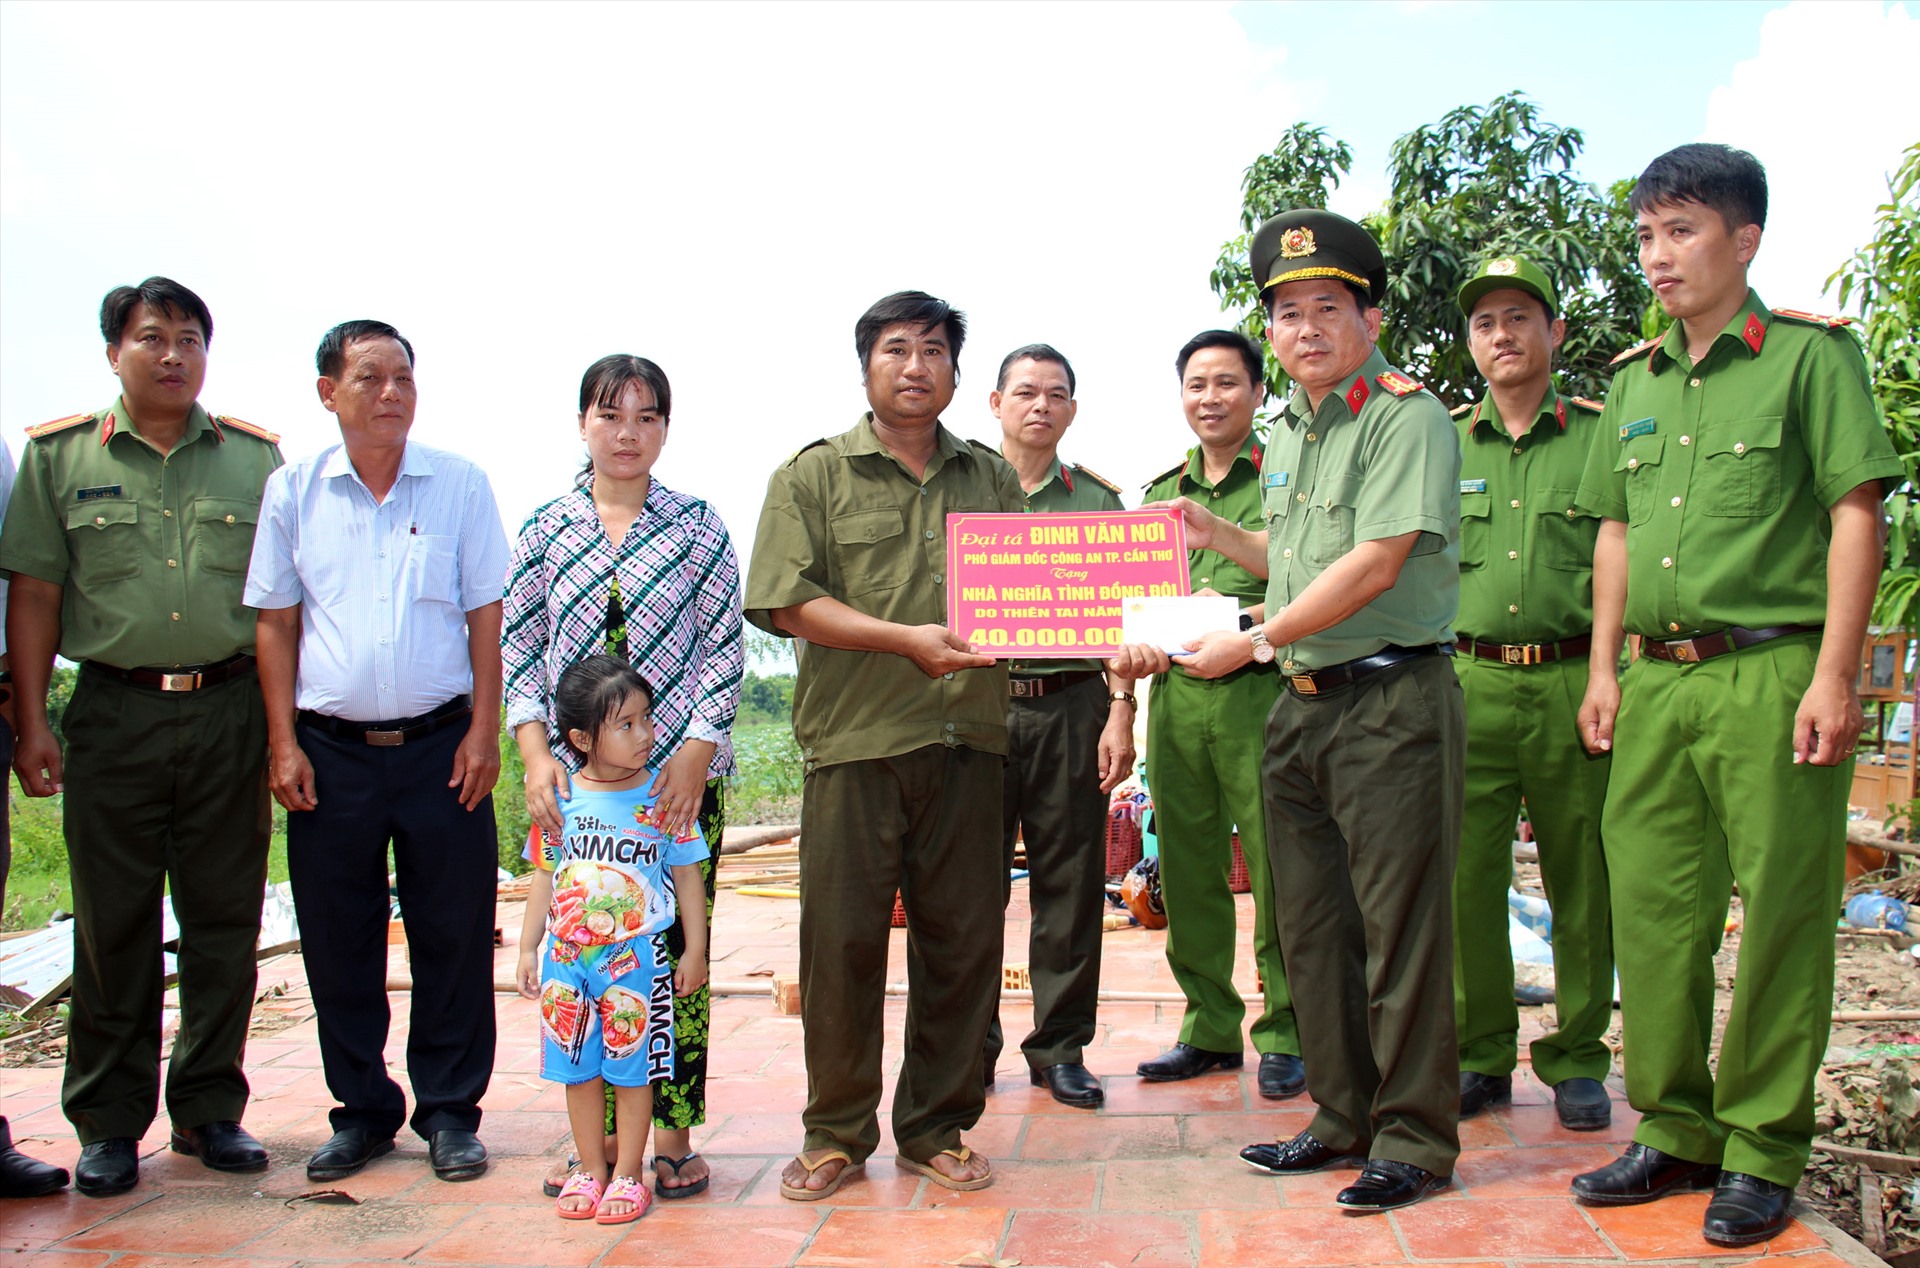 Đại tá Đinh Văn Nơi trao tặng số tiền 40 triệu đồng cho gia đình có nhà bị sập bởi giông lốc. Ảnh: Tr.L.